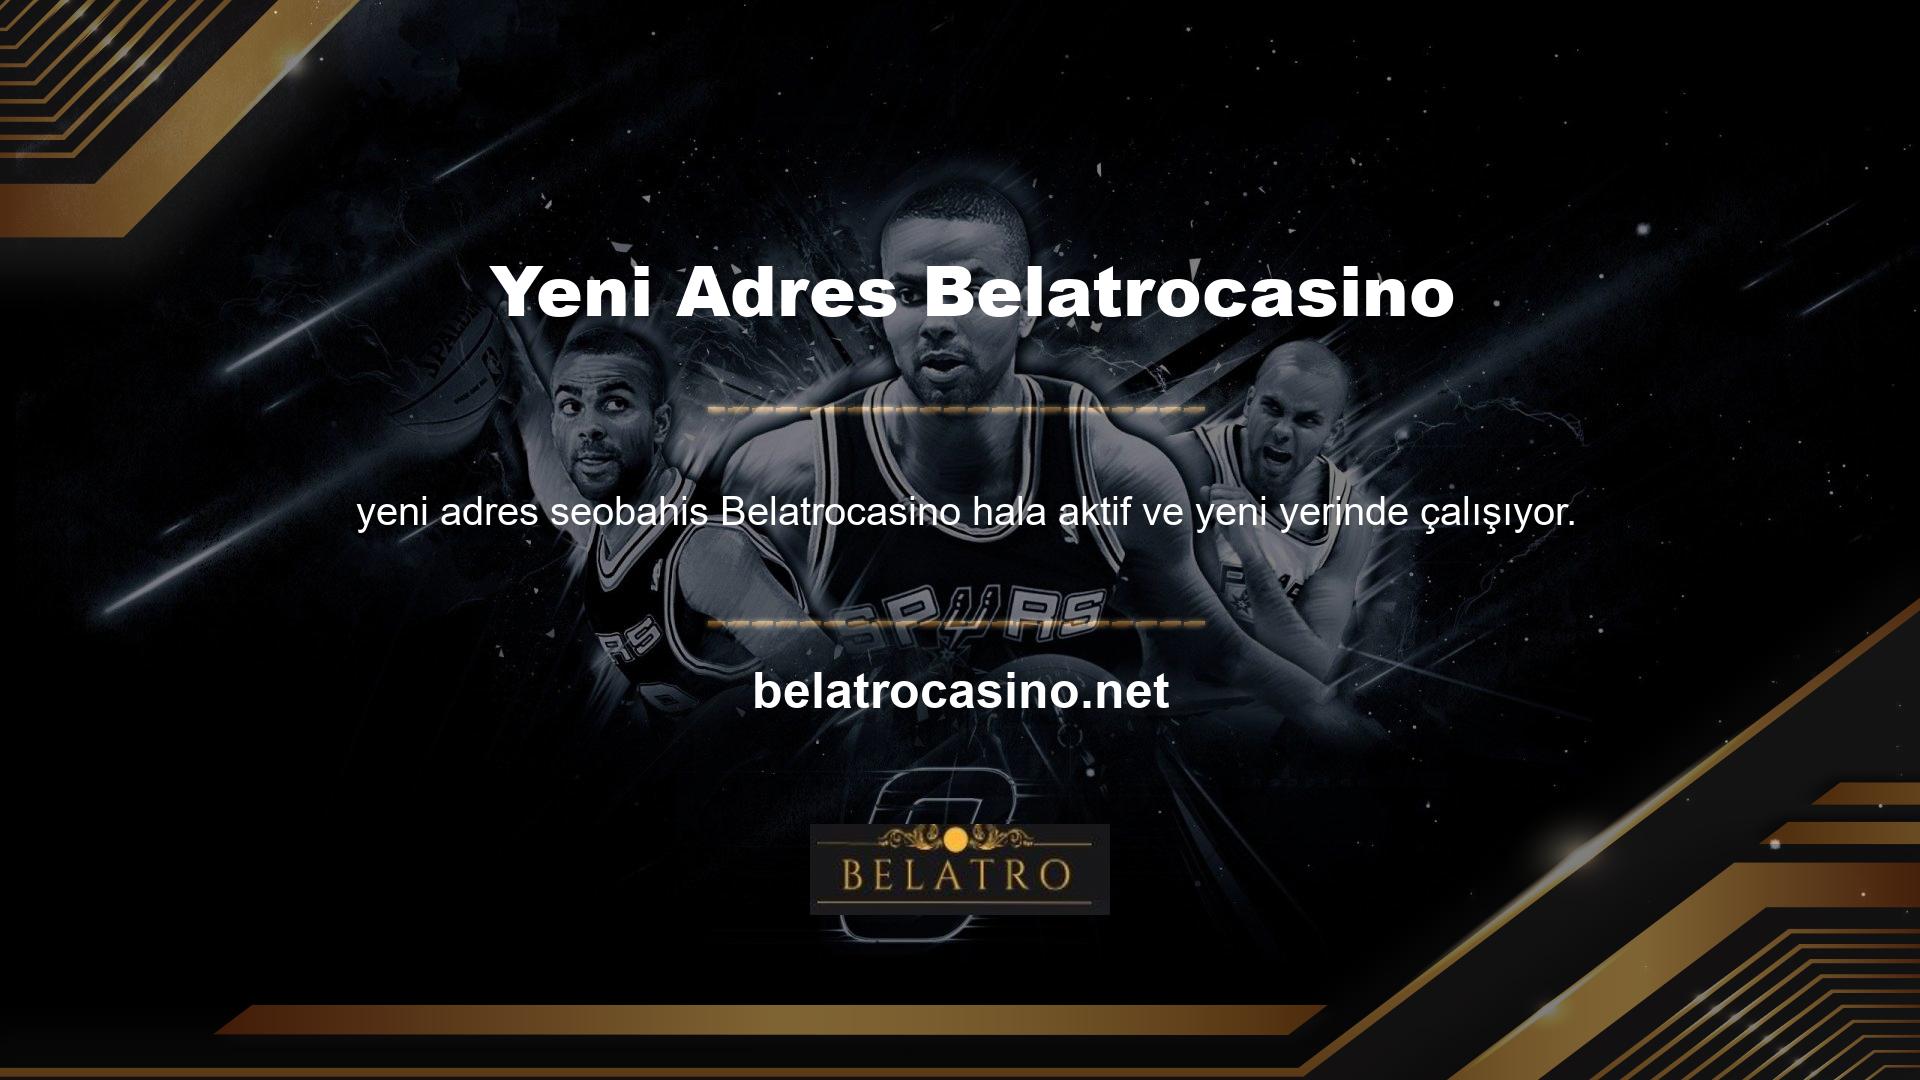 Ayrıca sitenin güncel lokasyonu olan Belatrocasino de siteye katılabilirsiniz